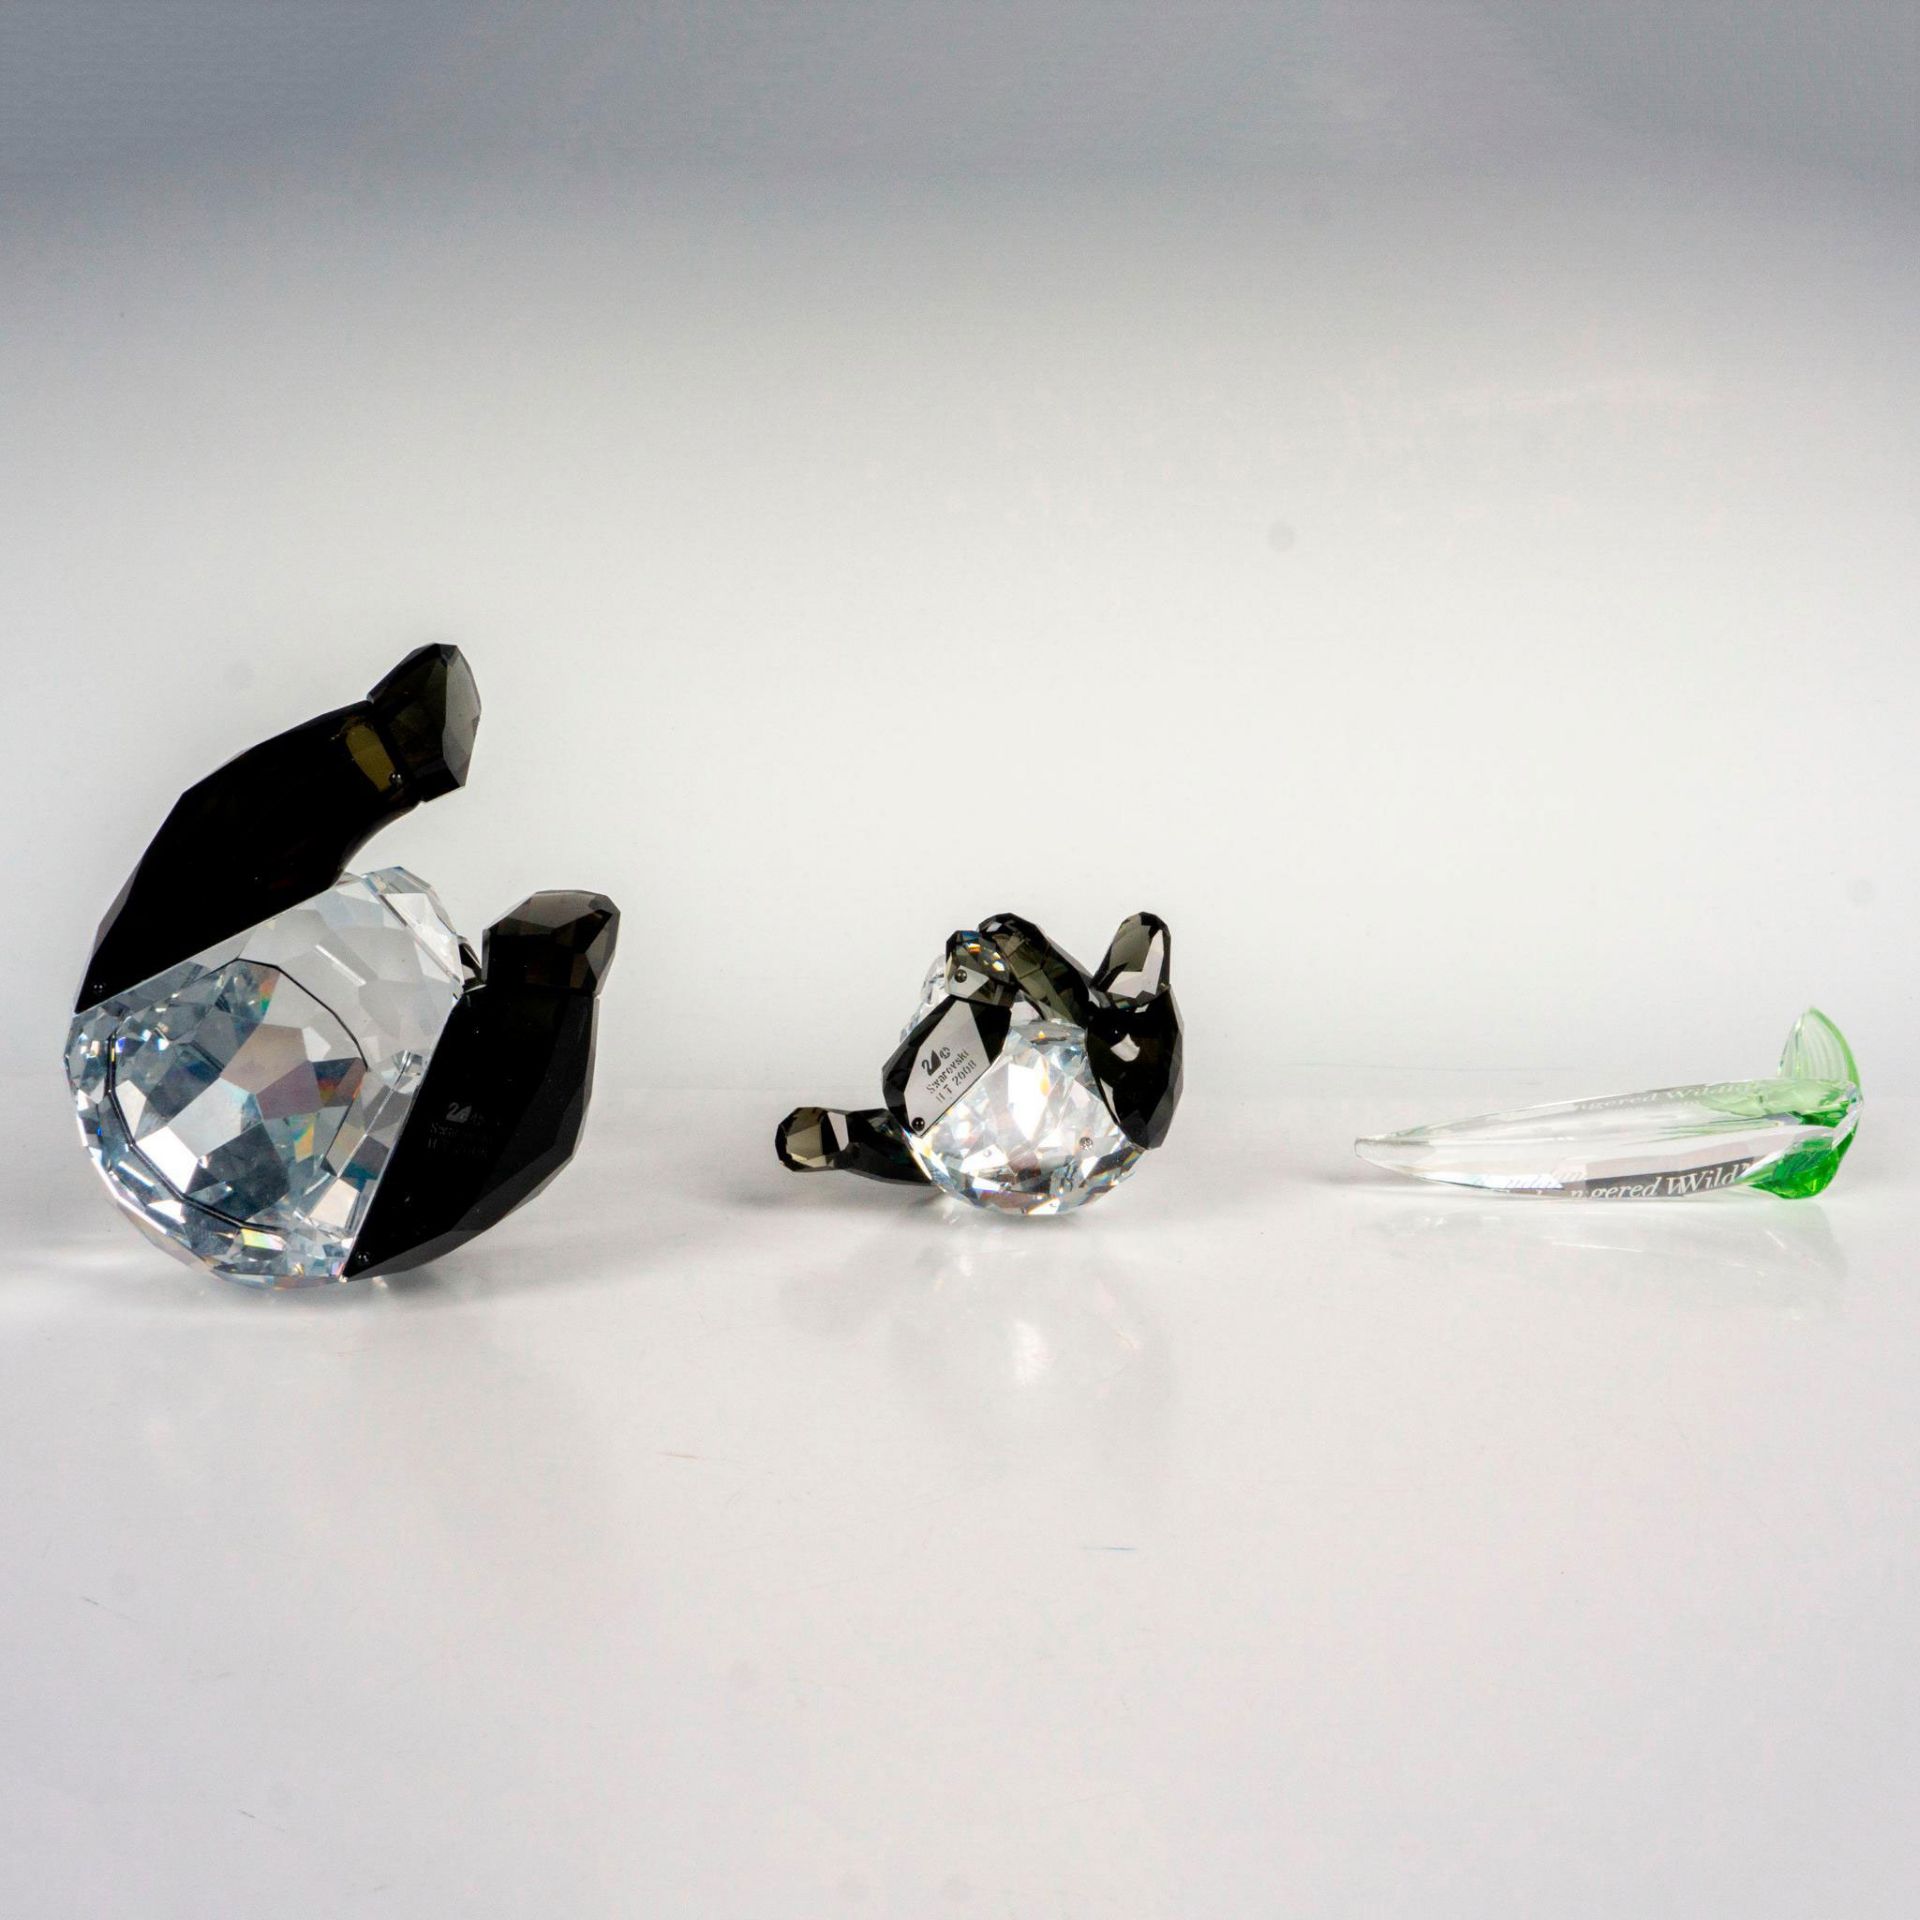 2pc Swarovski Crystal Figurines + Plaque, Pandas - Image 3 of 4